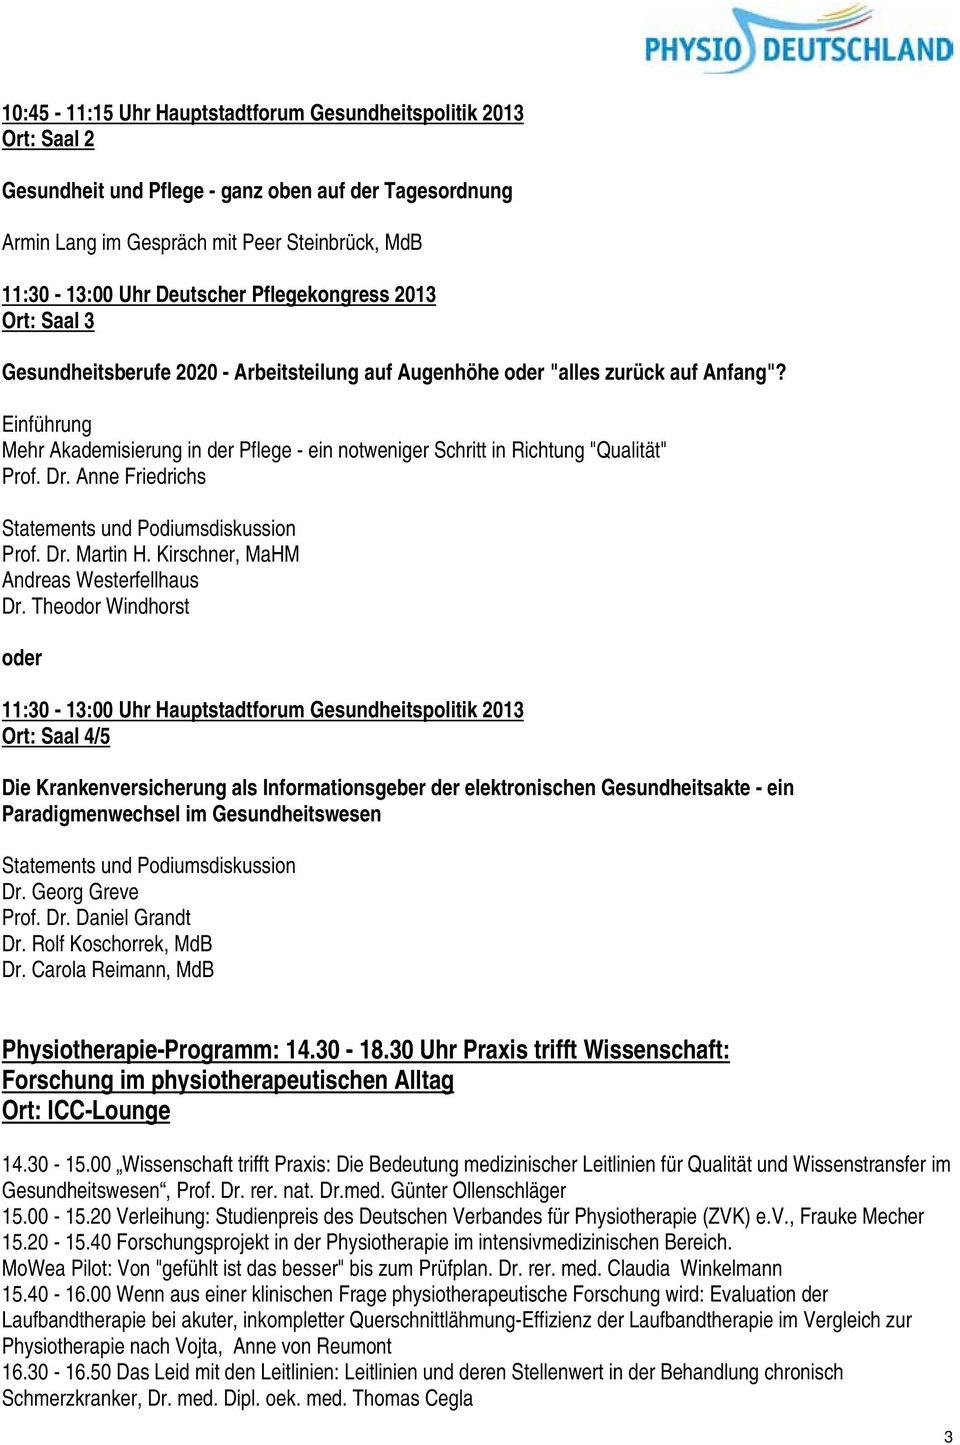 Einführung Mehr Akademisierung in der Pflege - ein notweniger Schritt in Richtung "Qualität" Prof. Dr. Anne Friedrichs Prof. Dr. Martin H. Kirschner, MaHM Andreas Westerfellhaus Dr.